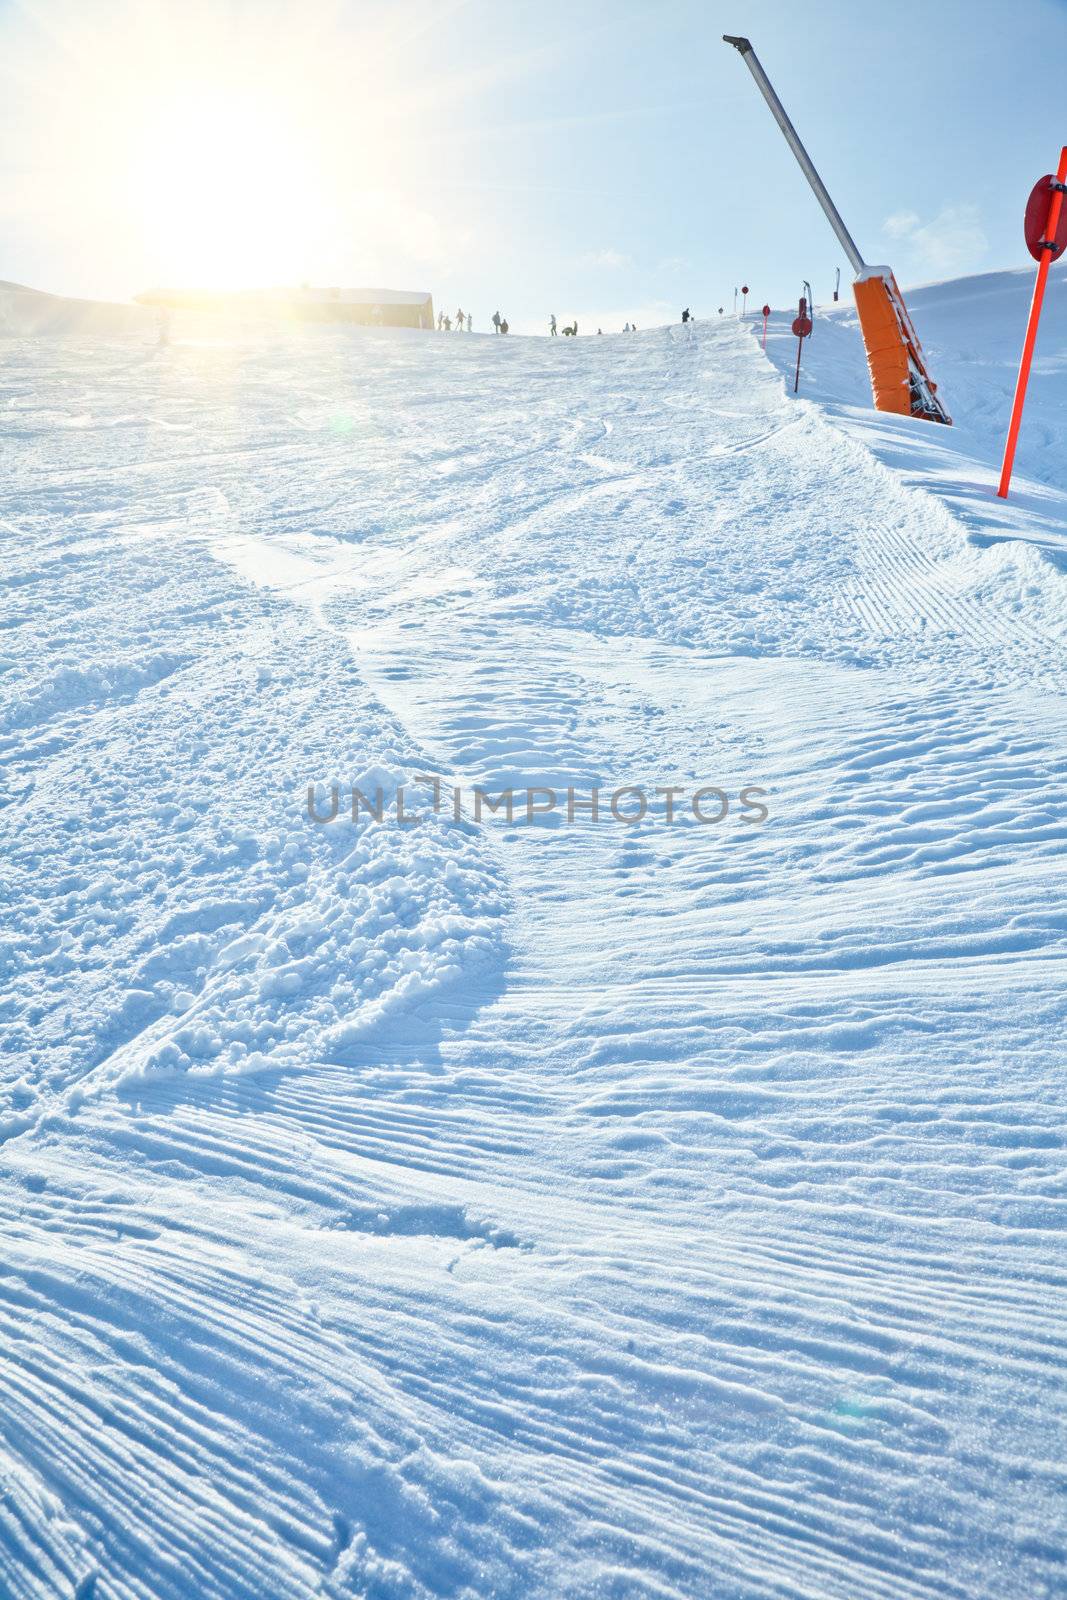 Fresh snow on a ski slope at Val Di Fassa ski resort in Italy